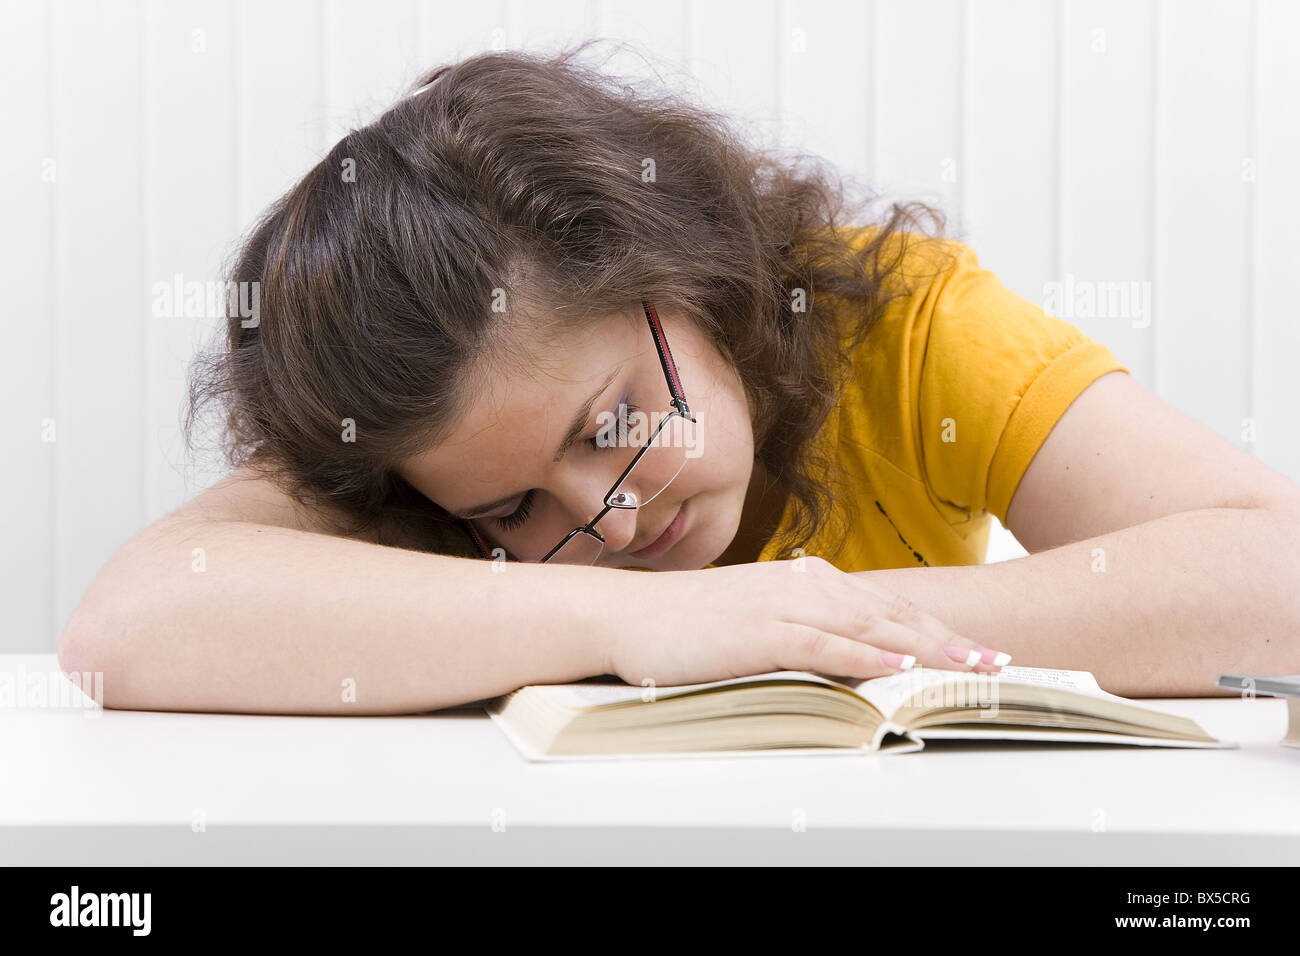 La giovane donna lo studente è addormentato sul libro aperto Foto Stock